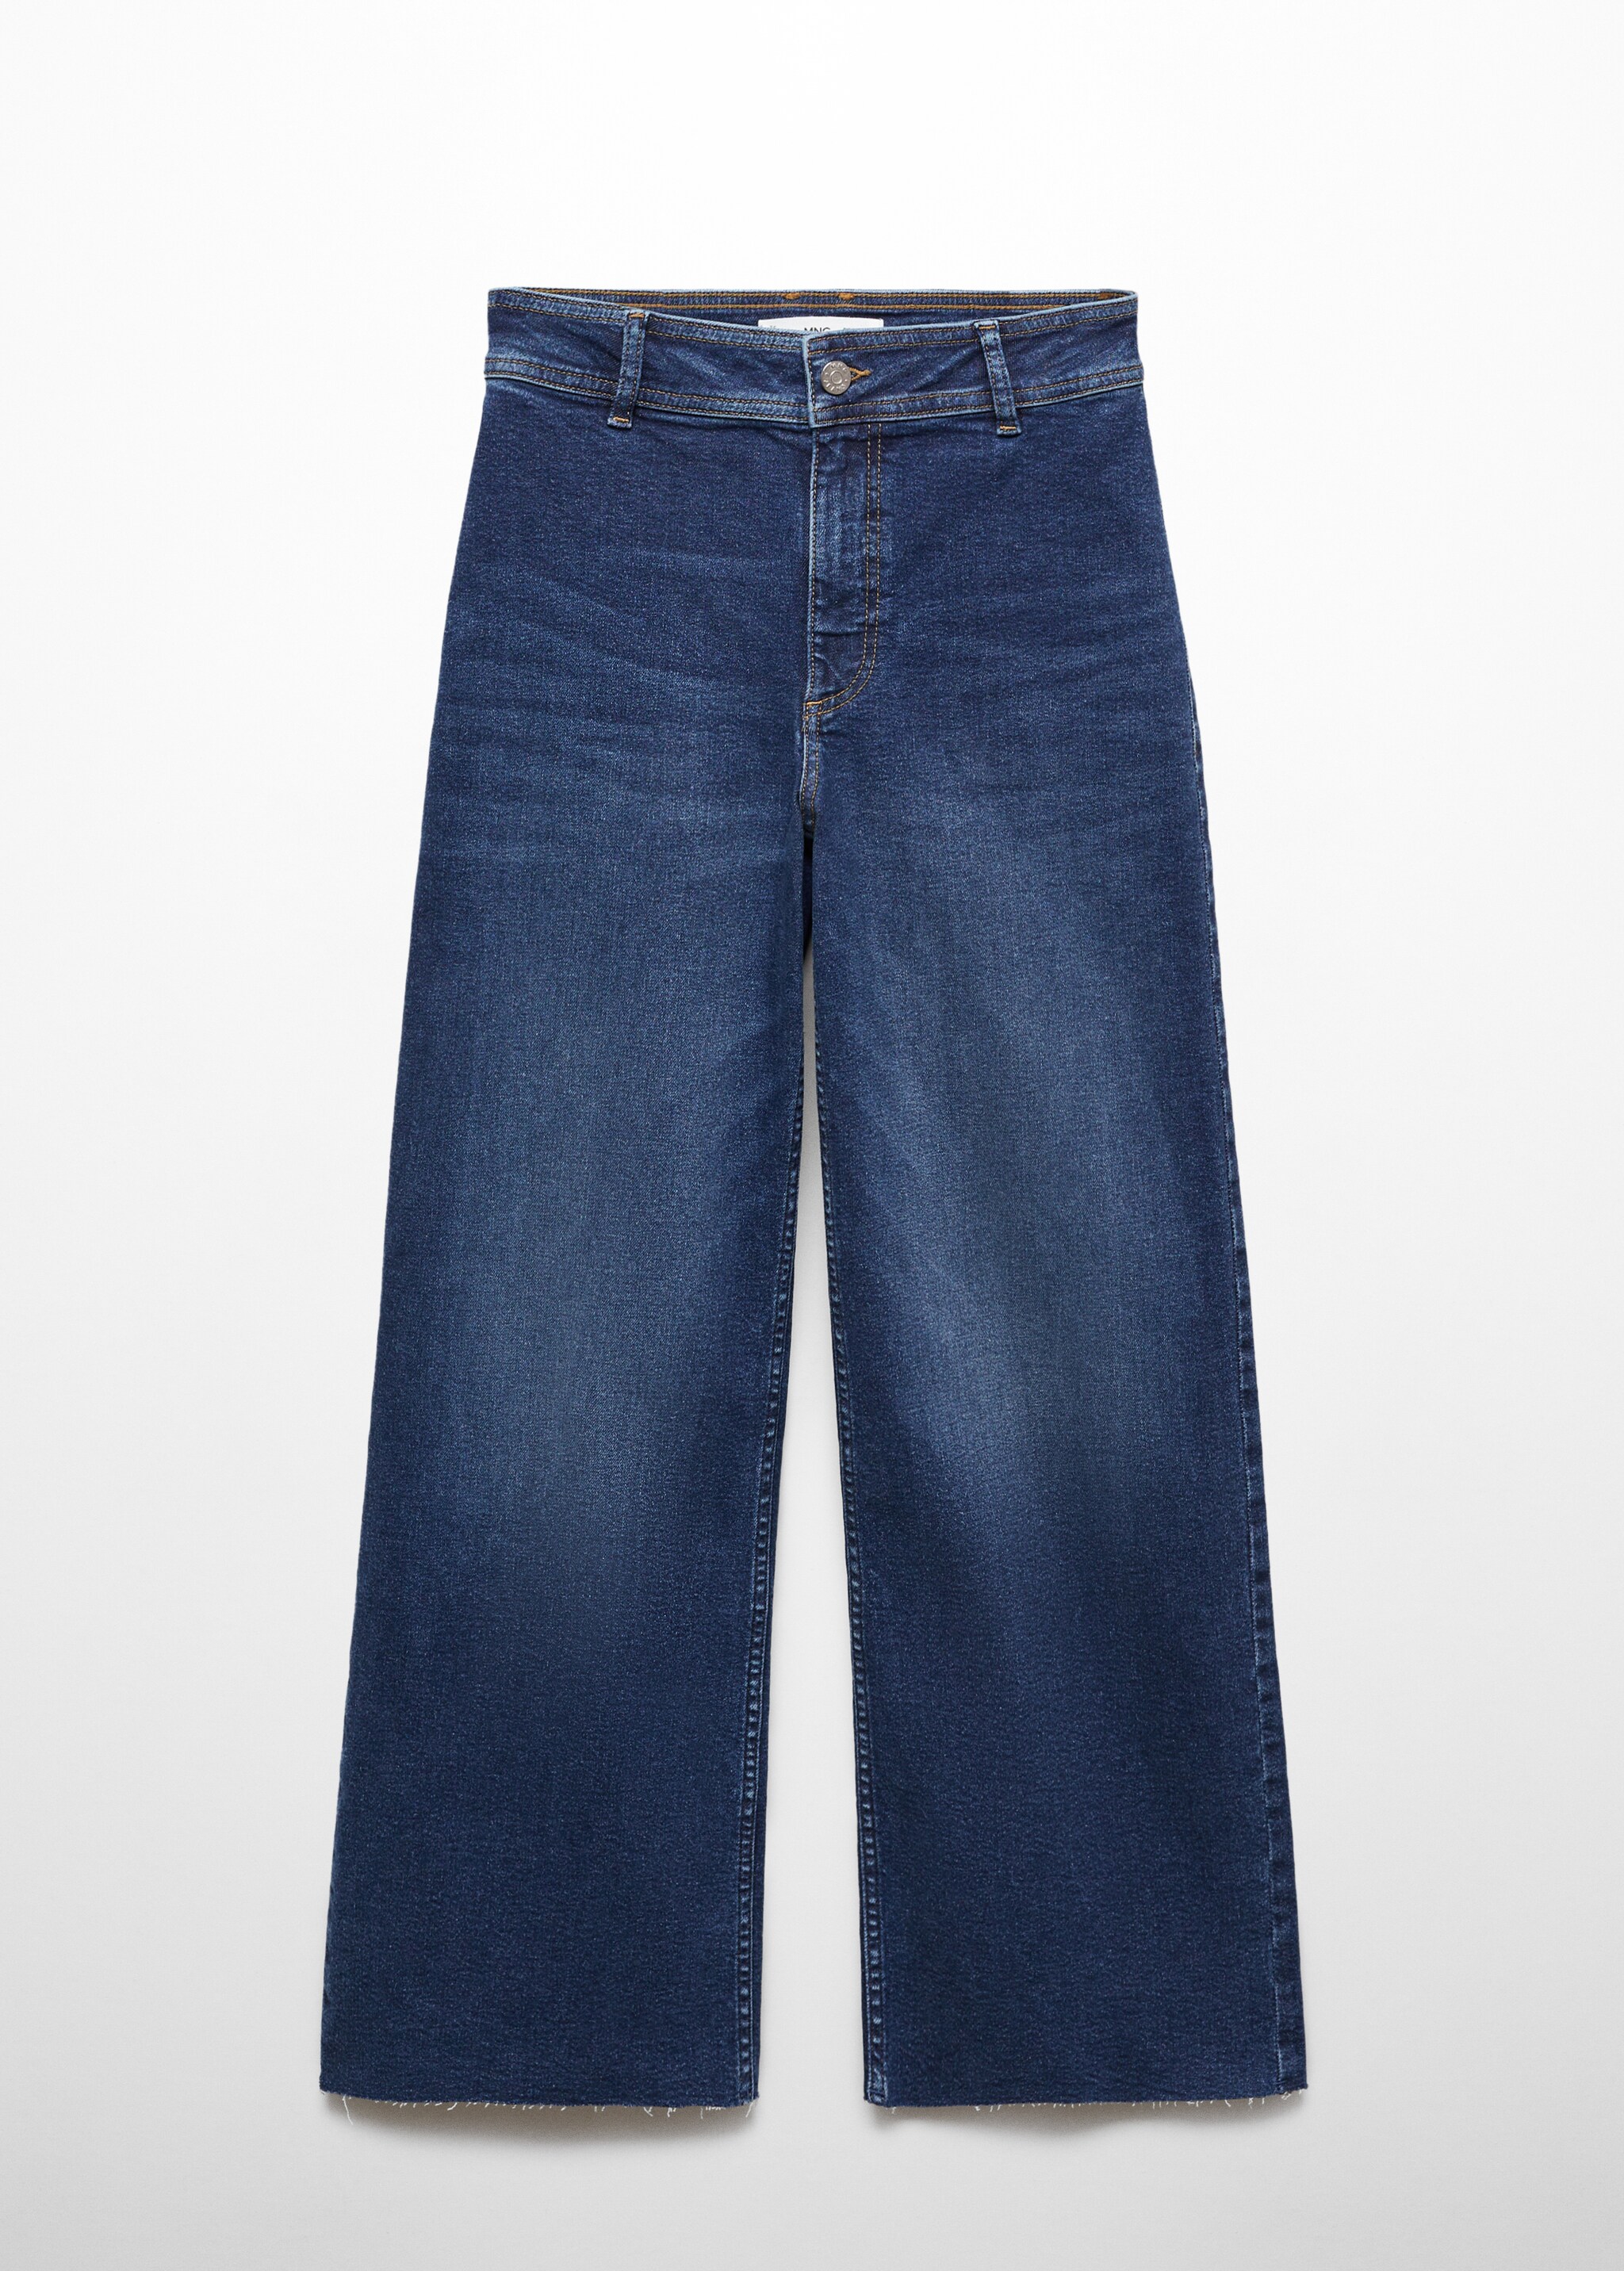 Catherin yüksek belli culotte jean pantolon - Modelsiz ürün